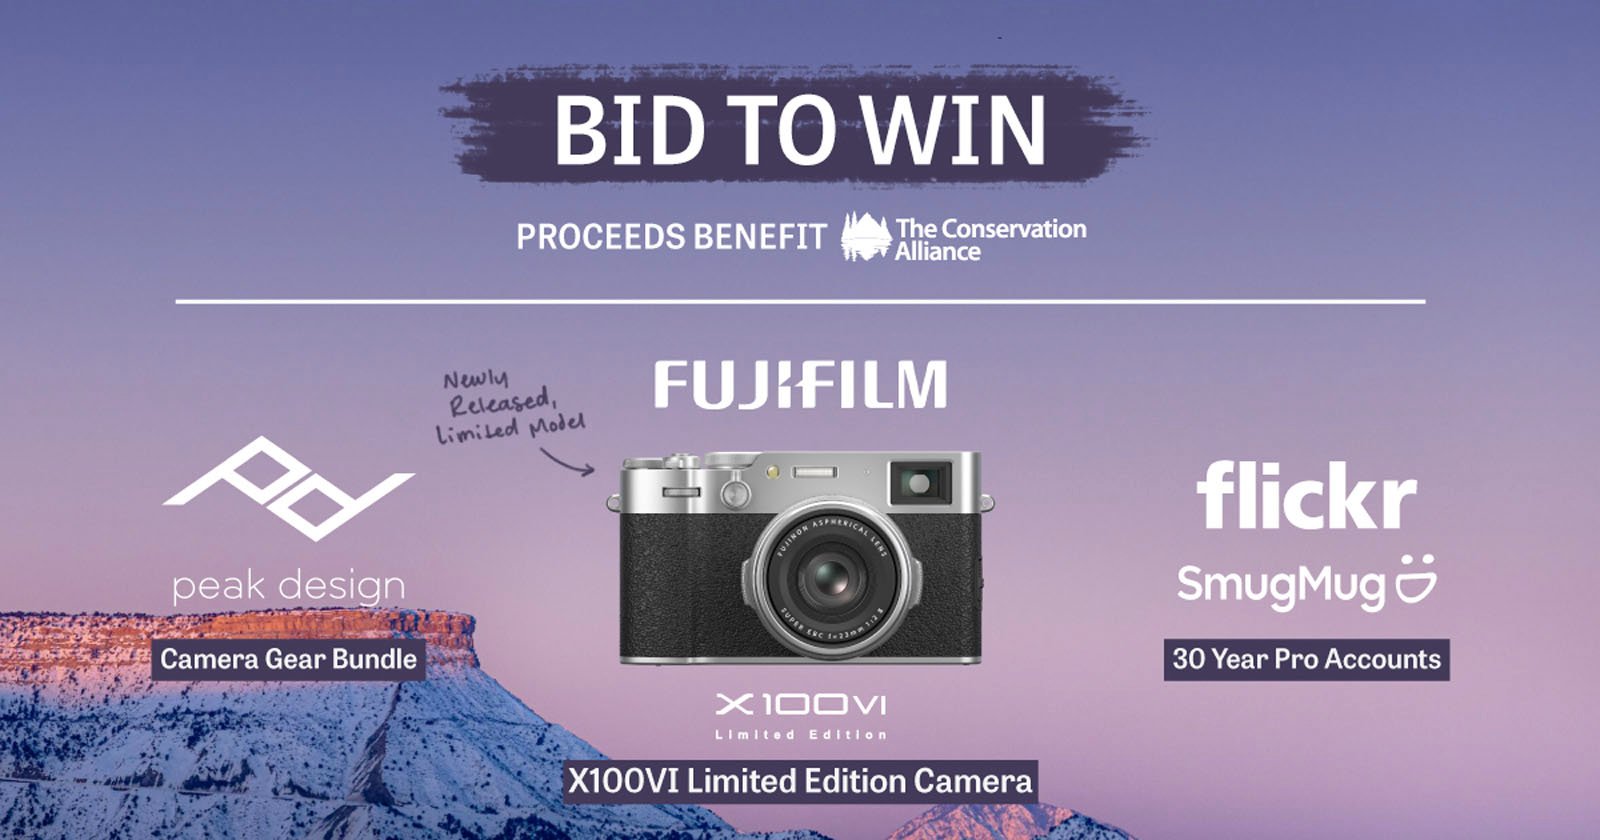 Fujifilm Auction